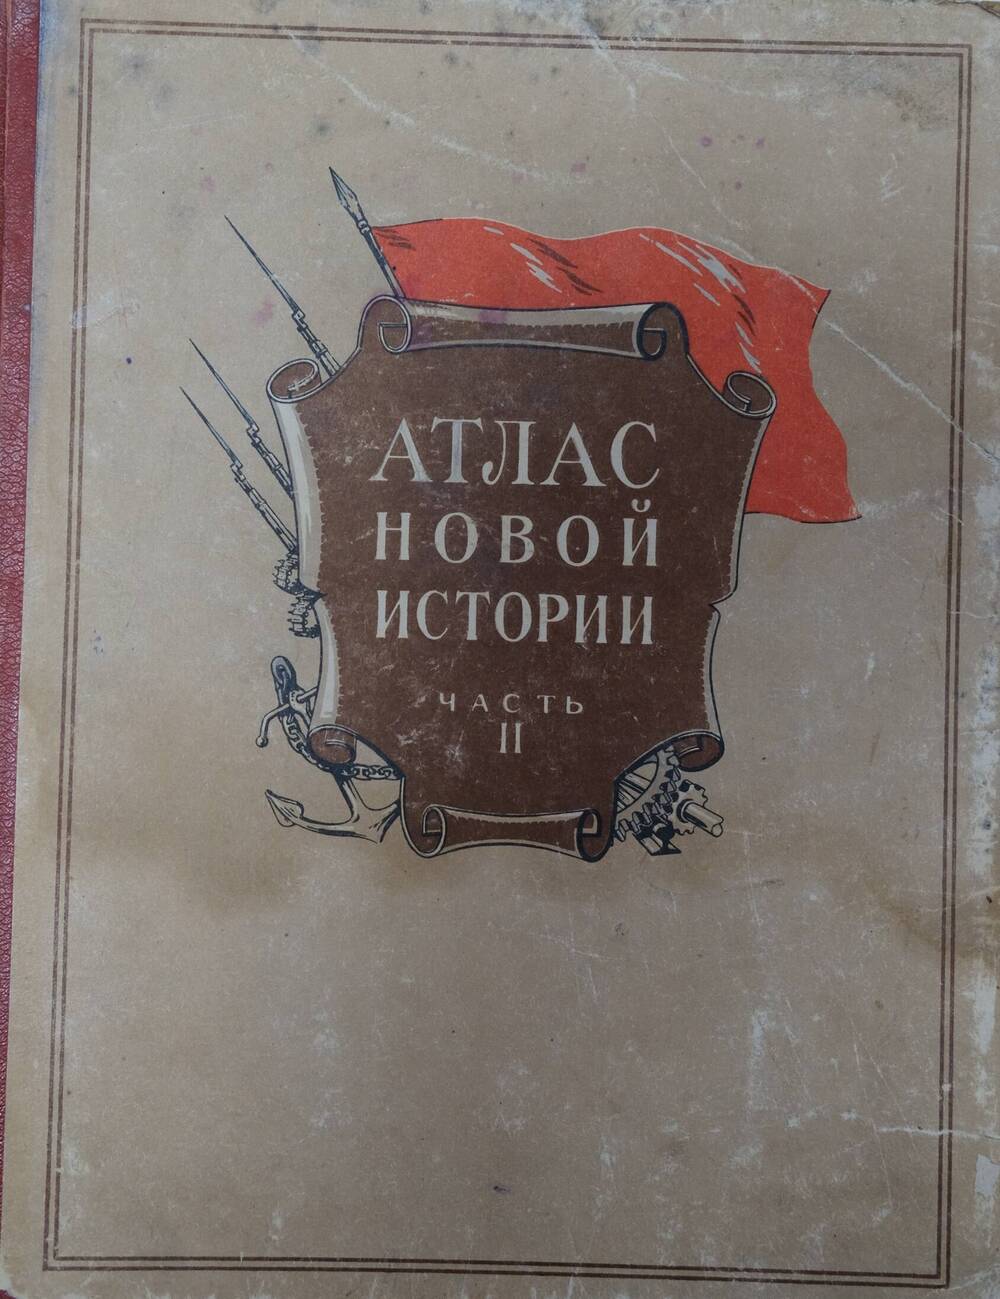 Атлас Новой истории -часть II.Для средней школы Москва 1954г.